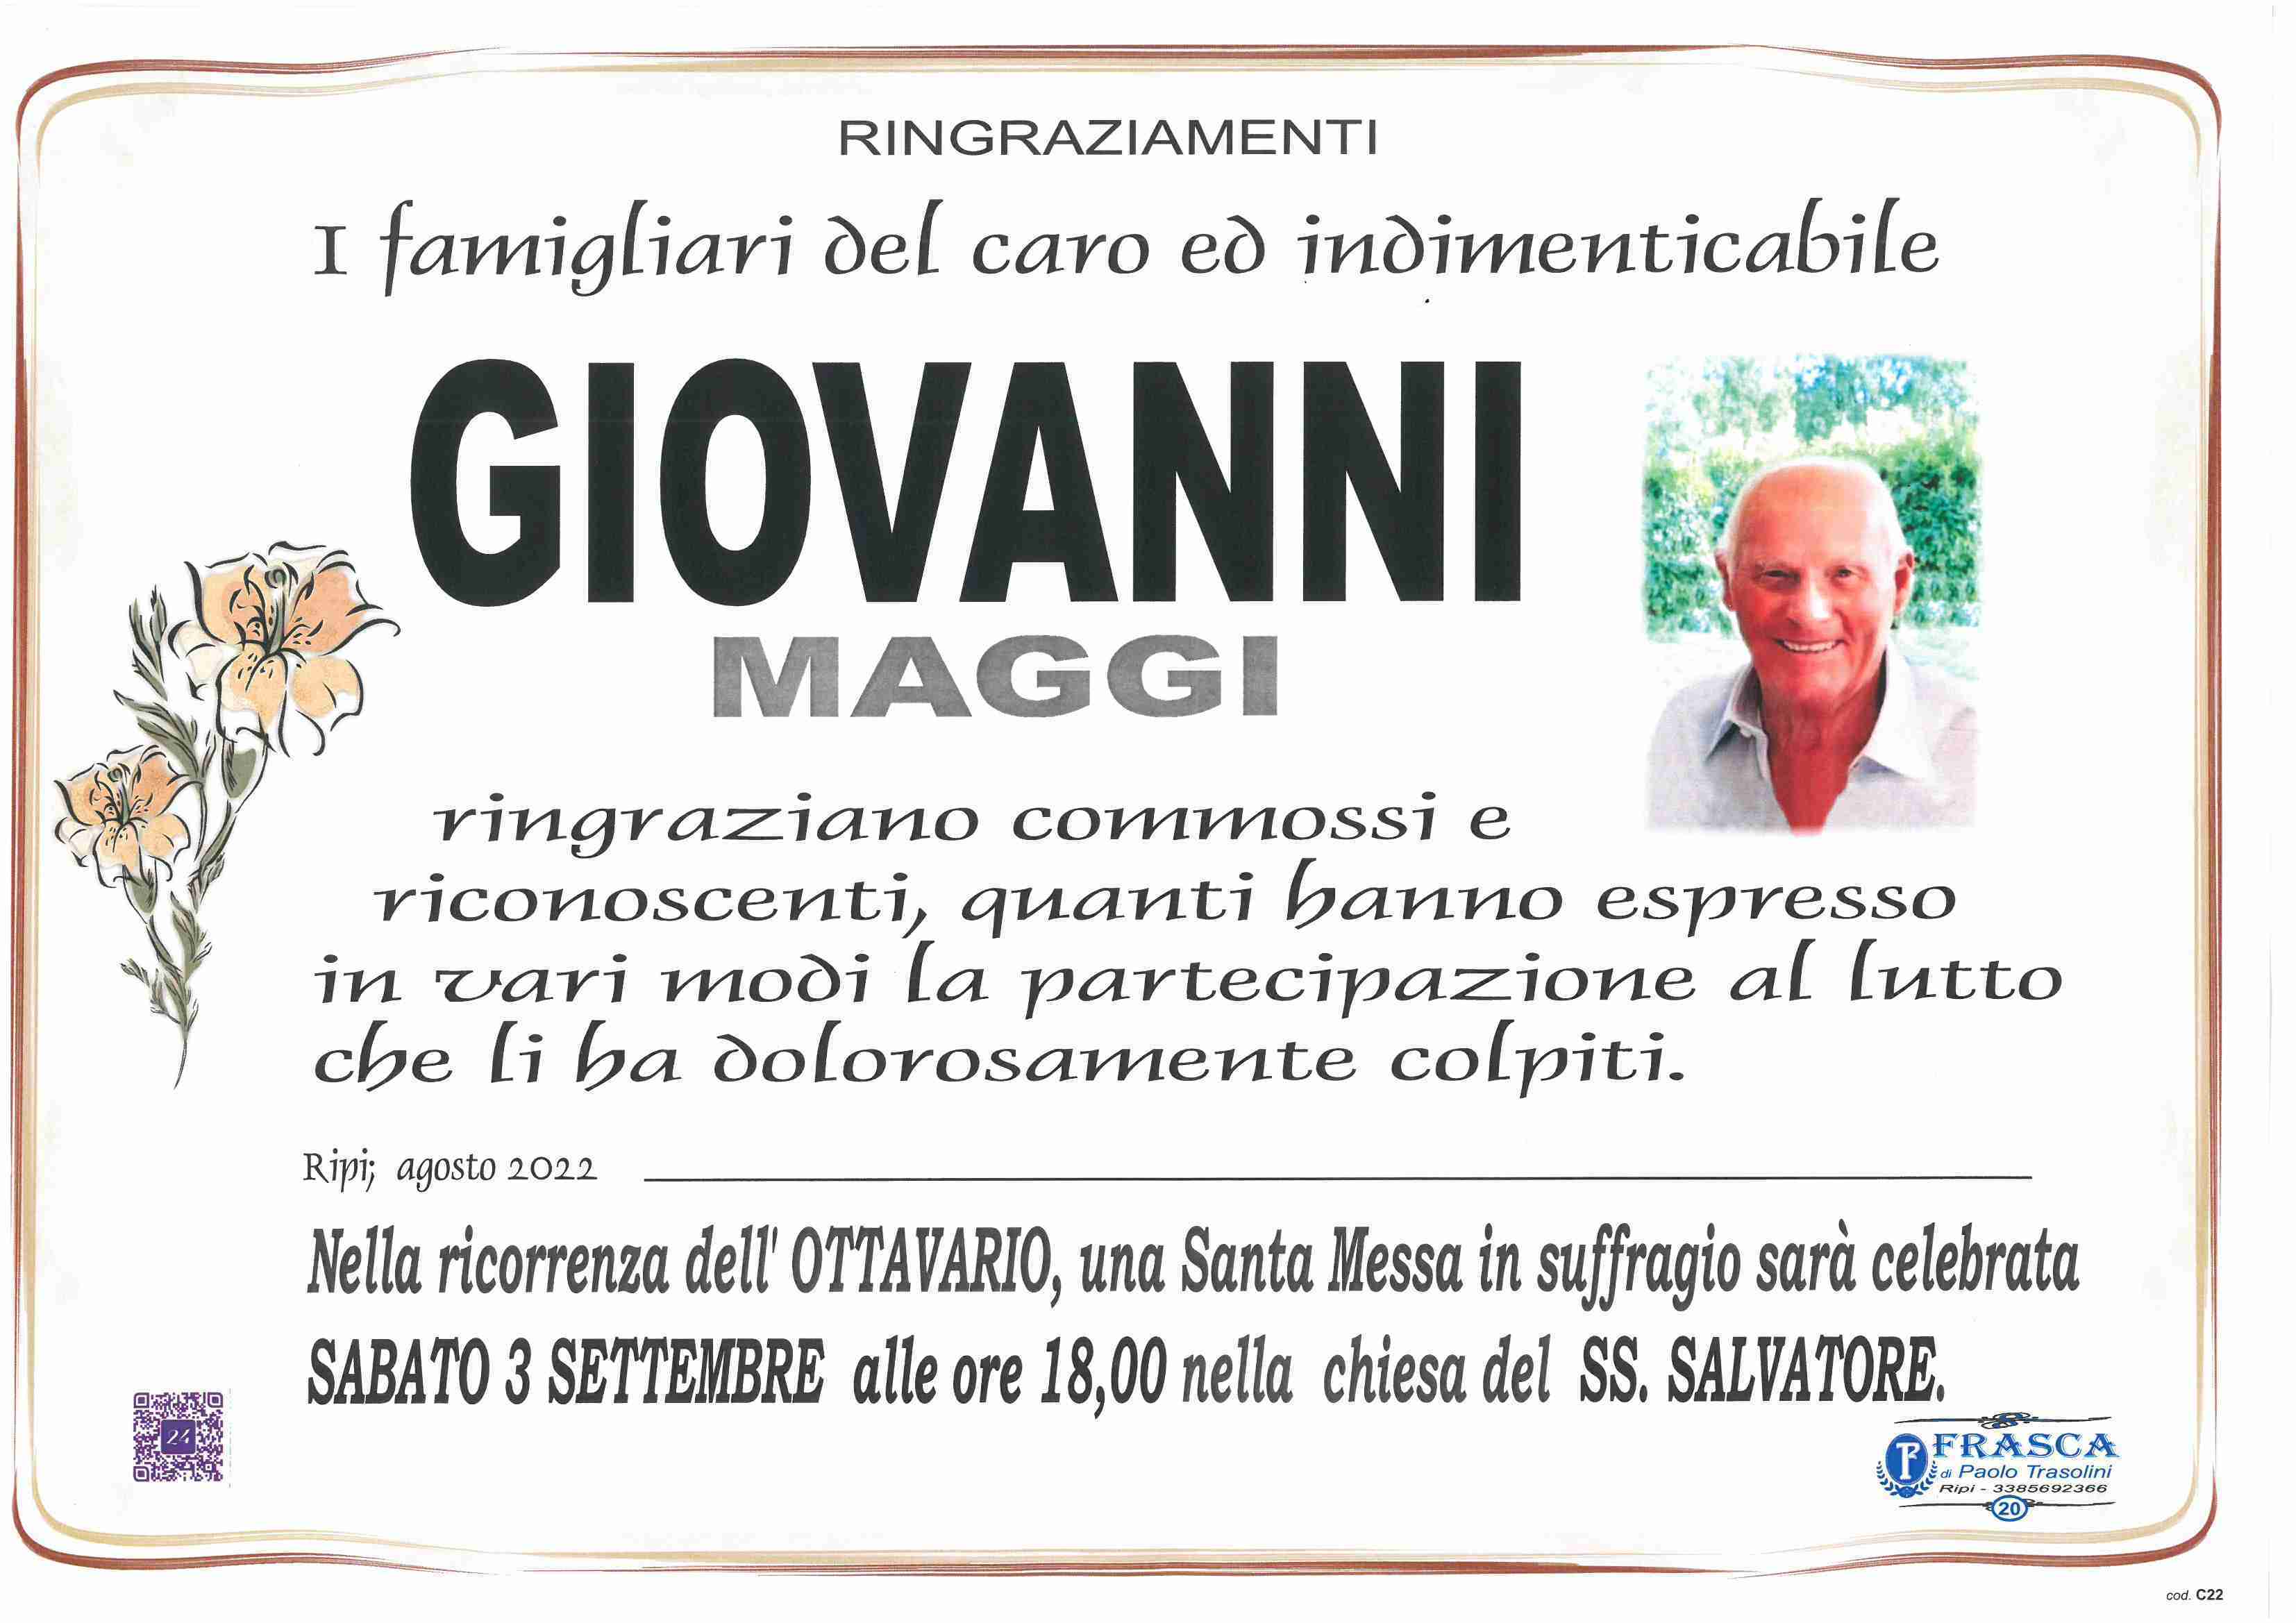 Giovanni Maggi